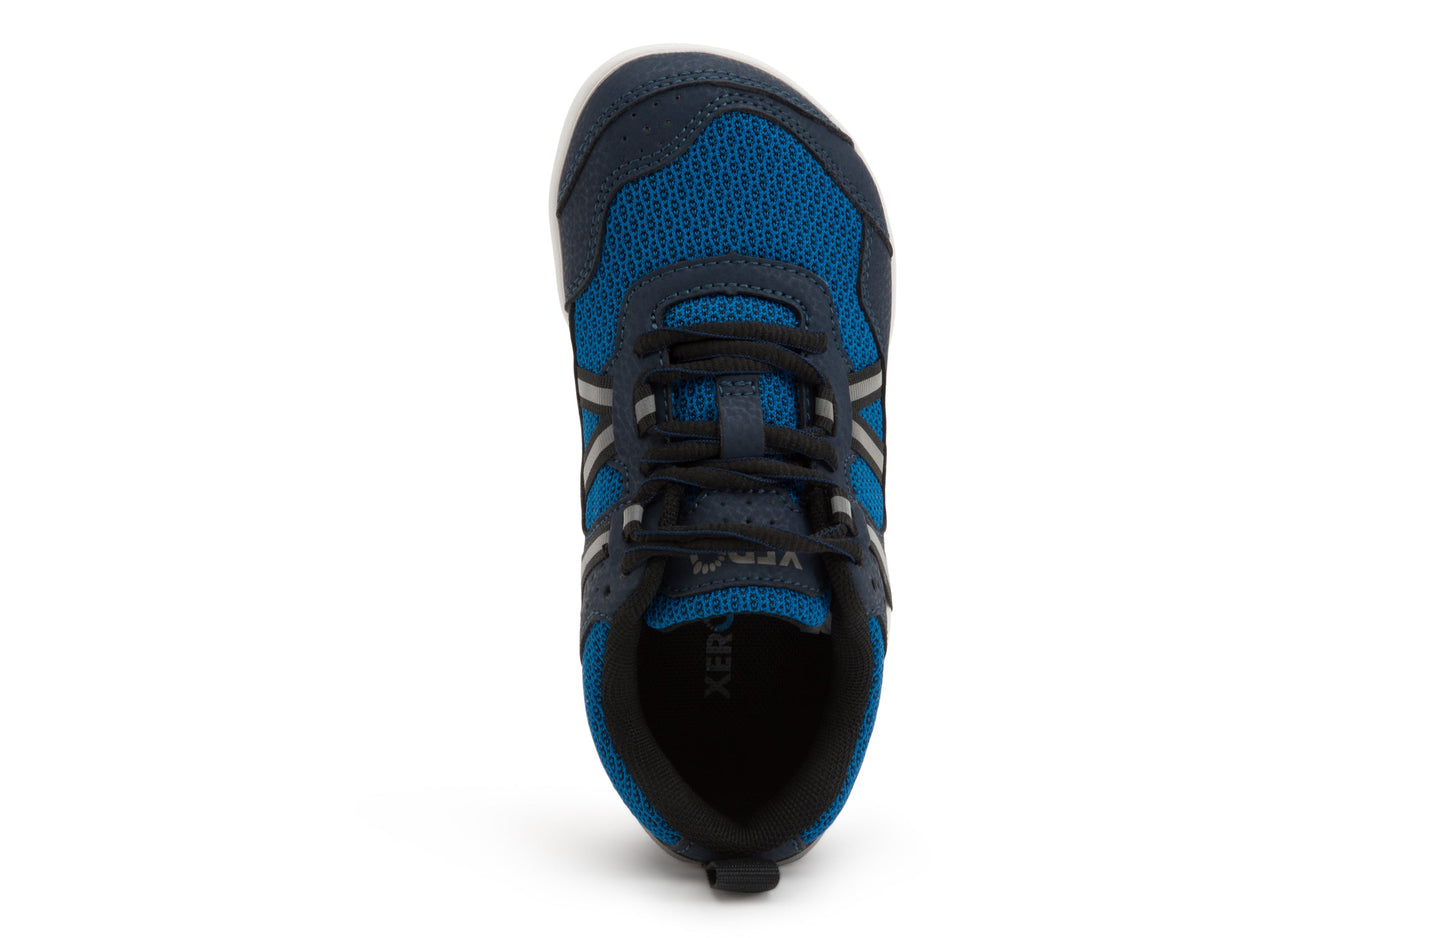 Xero Shoes Prio Kids barfods træningssko/sneakers til børn i farven mykonos blue, top